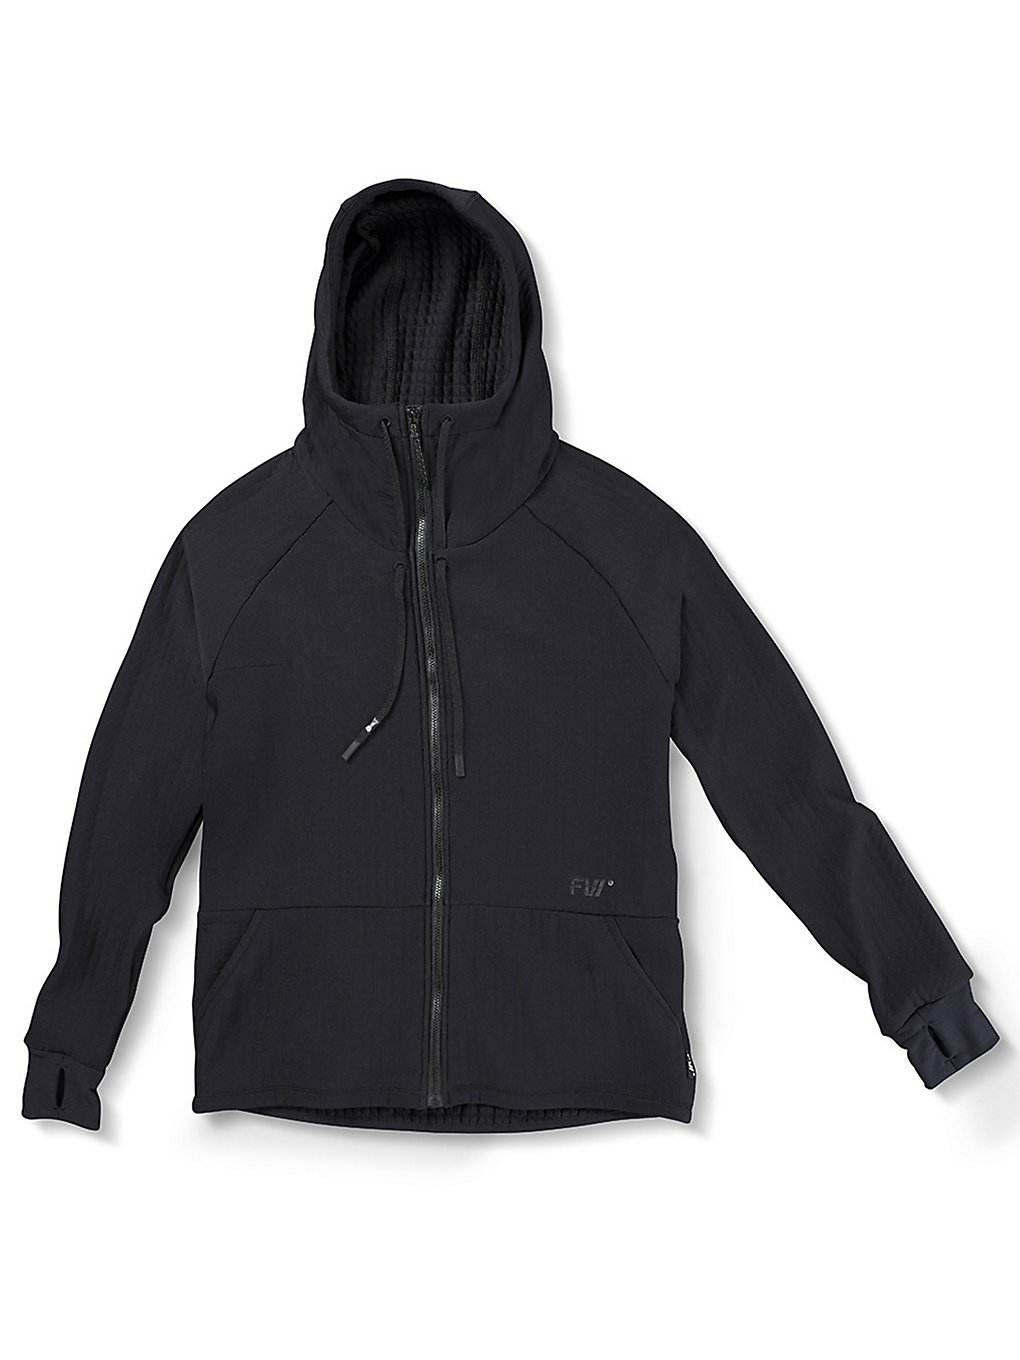 FW Source Powerair Hoodie Fleece Jacket slate black